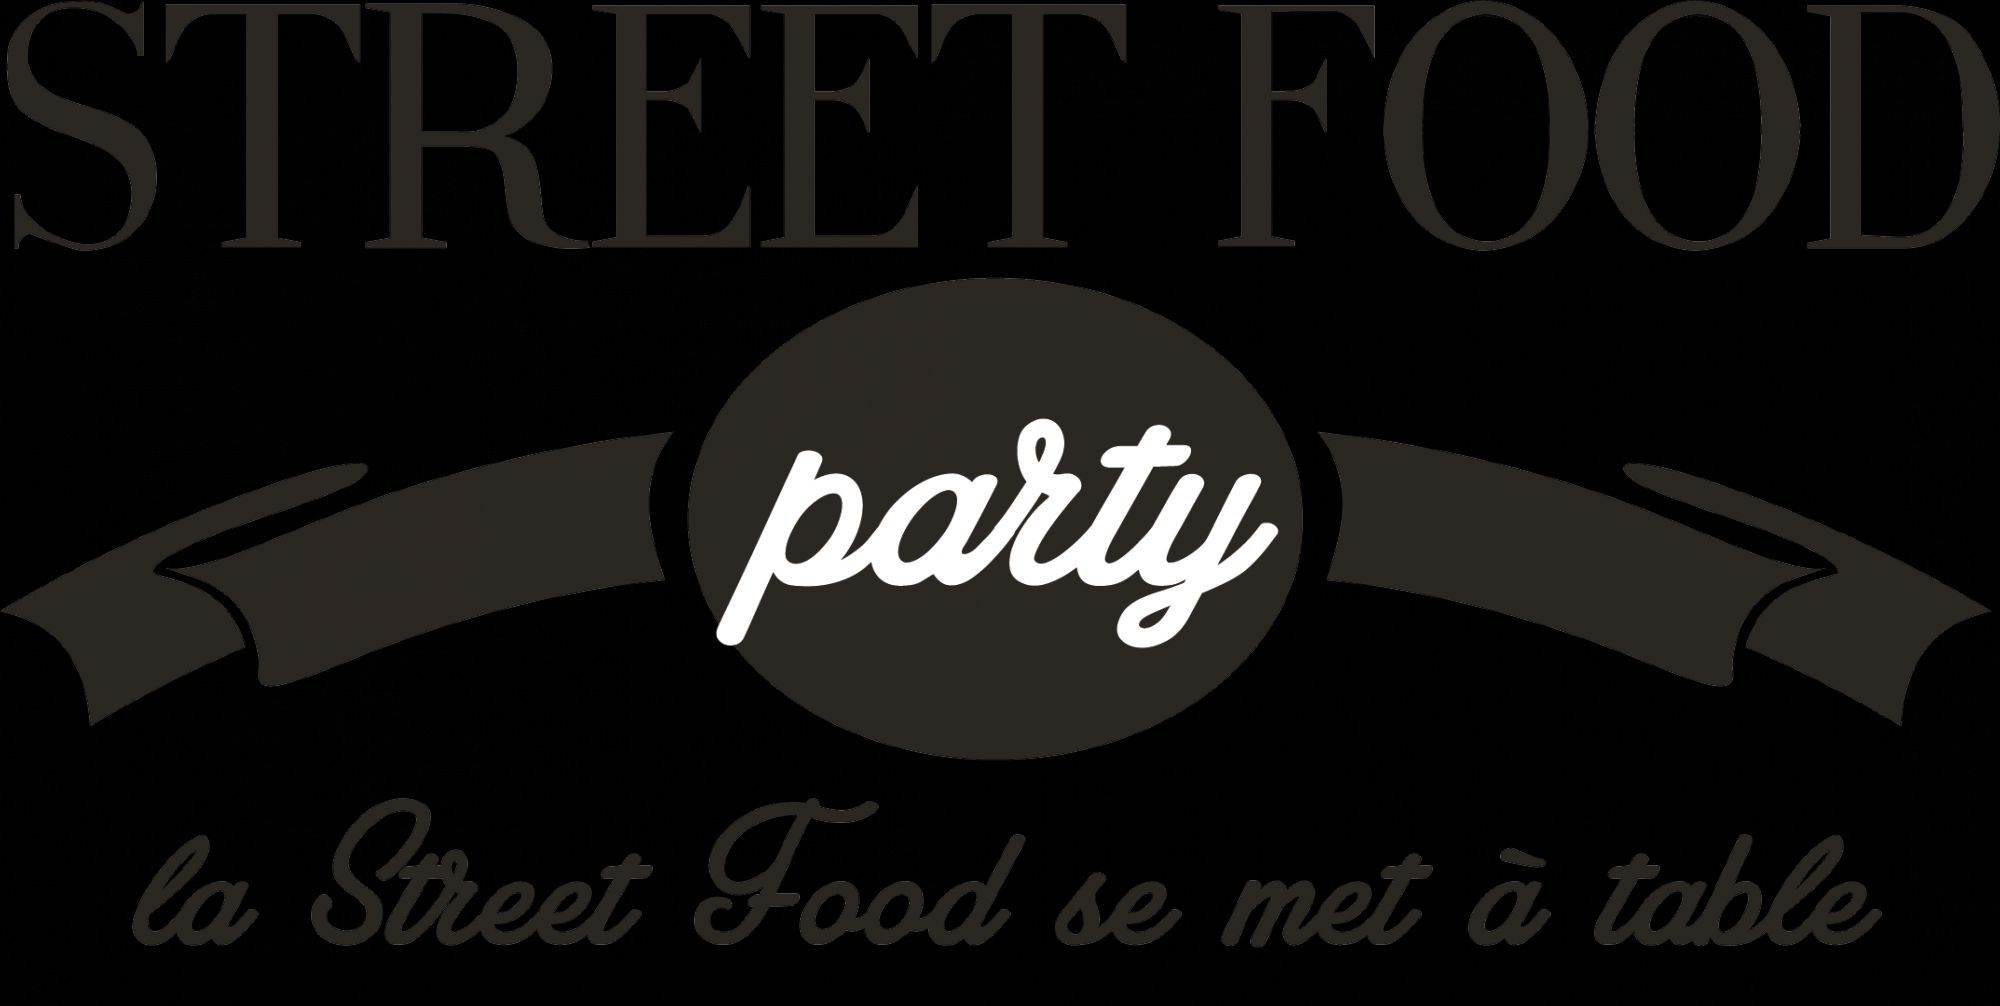 L'affiche de la Street food Party